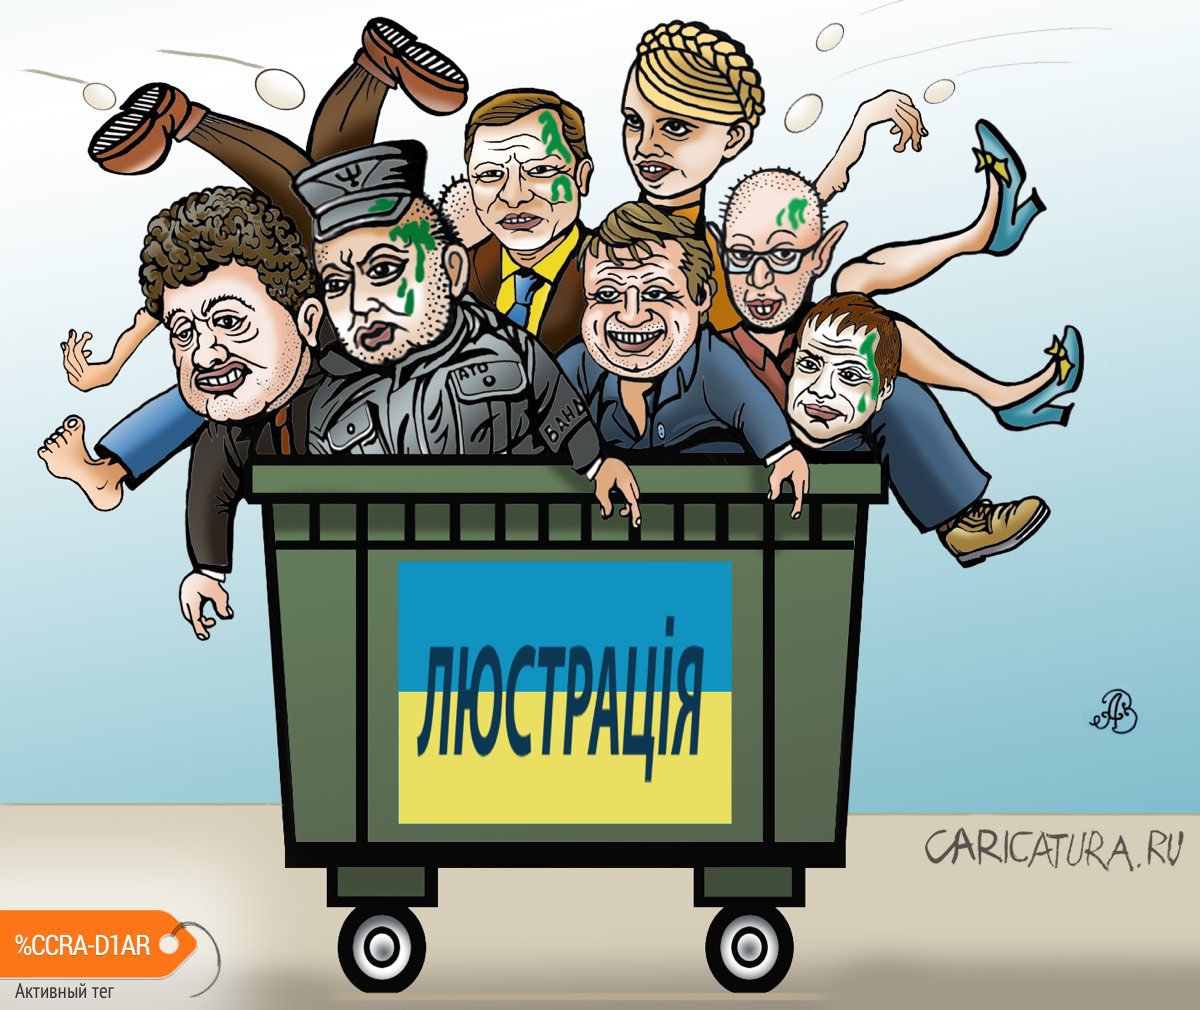 Карикатура "Люстрация или закон бумеранга", Андрей Ребров